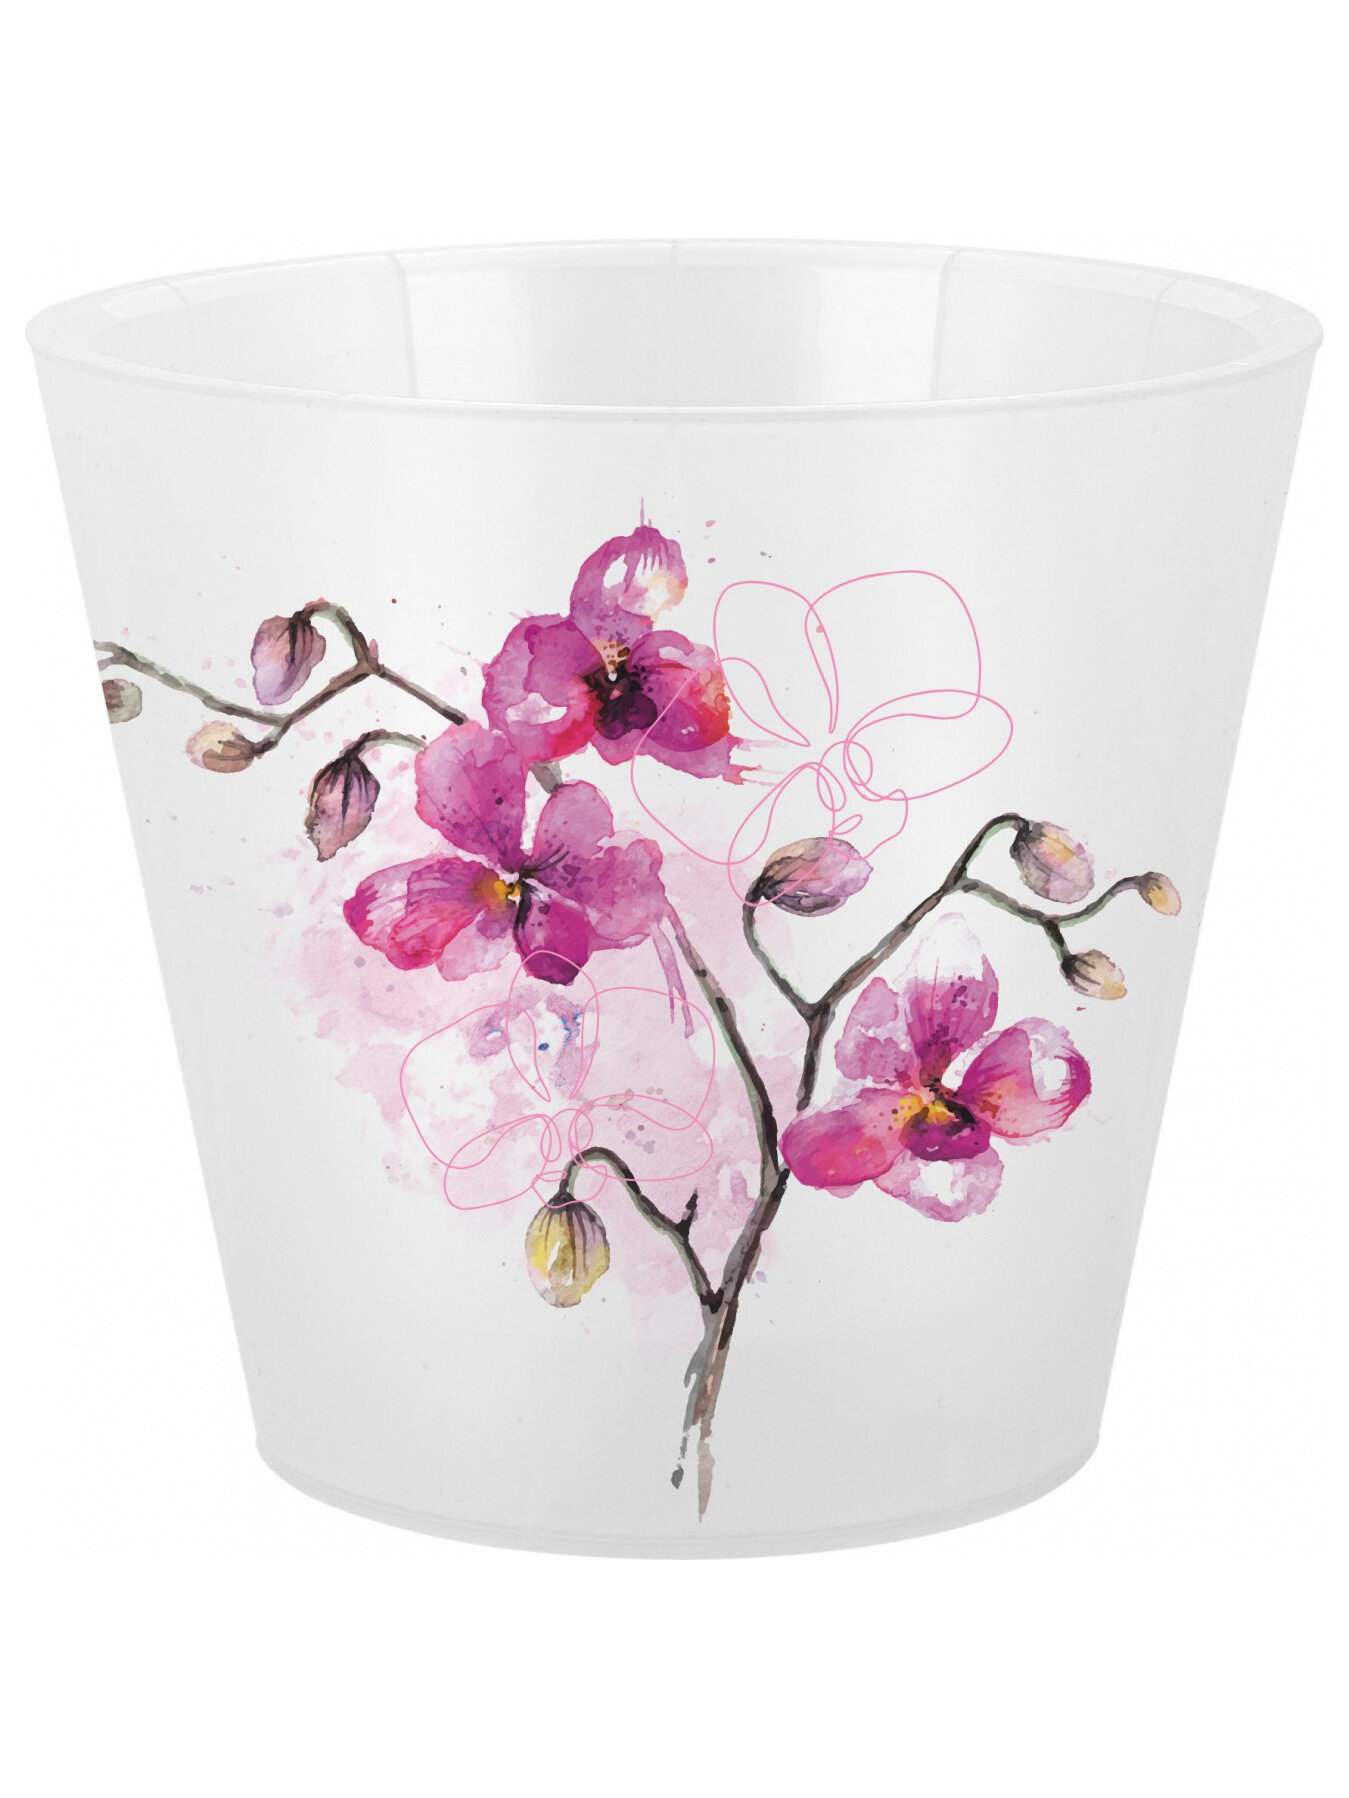 Горшок для цветов с дренажной вставкой InGreen коллекция London Orchid Deco, пластиковый, 1,6л, 160мм, 160х160х145 (IG6196) Фуксия